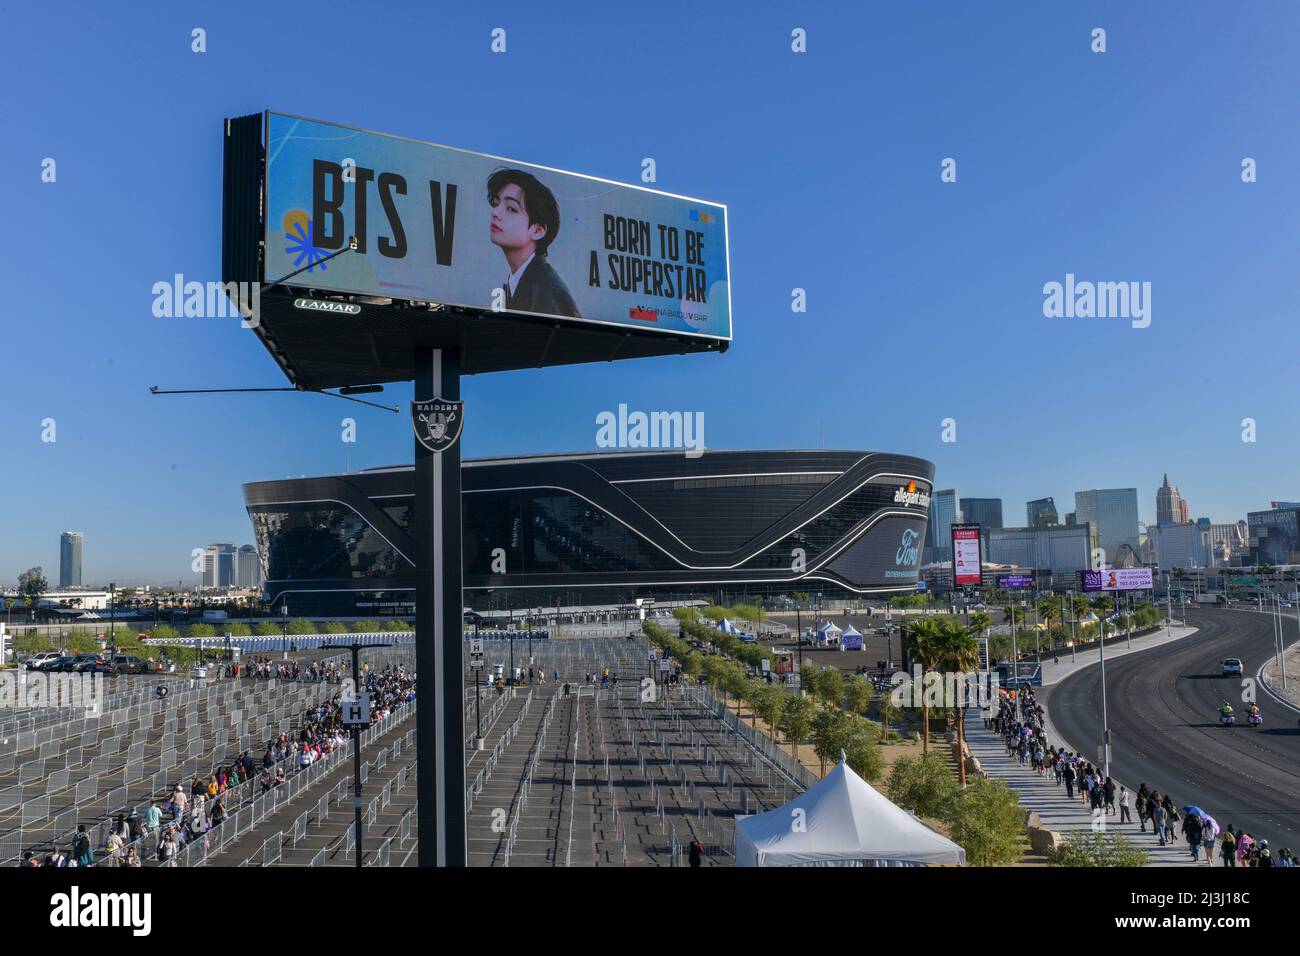 BTS Announce Las Vegas Stadium Concerts – Billboard